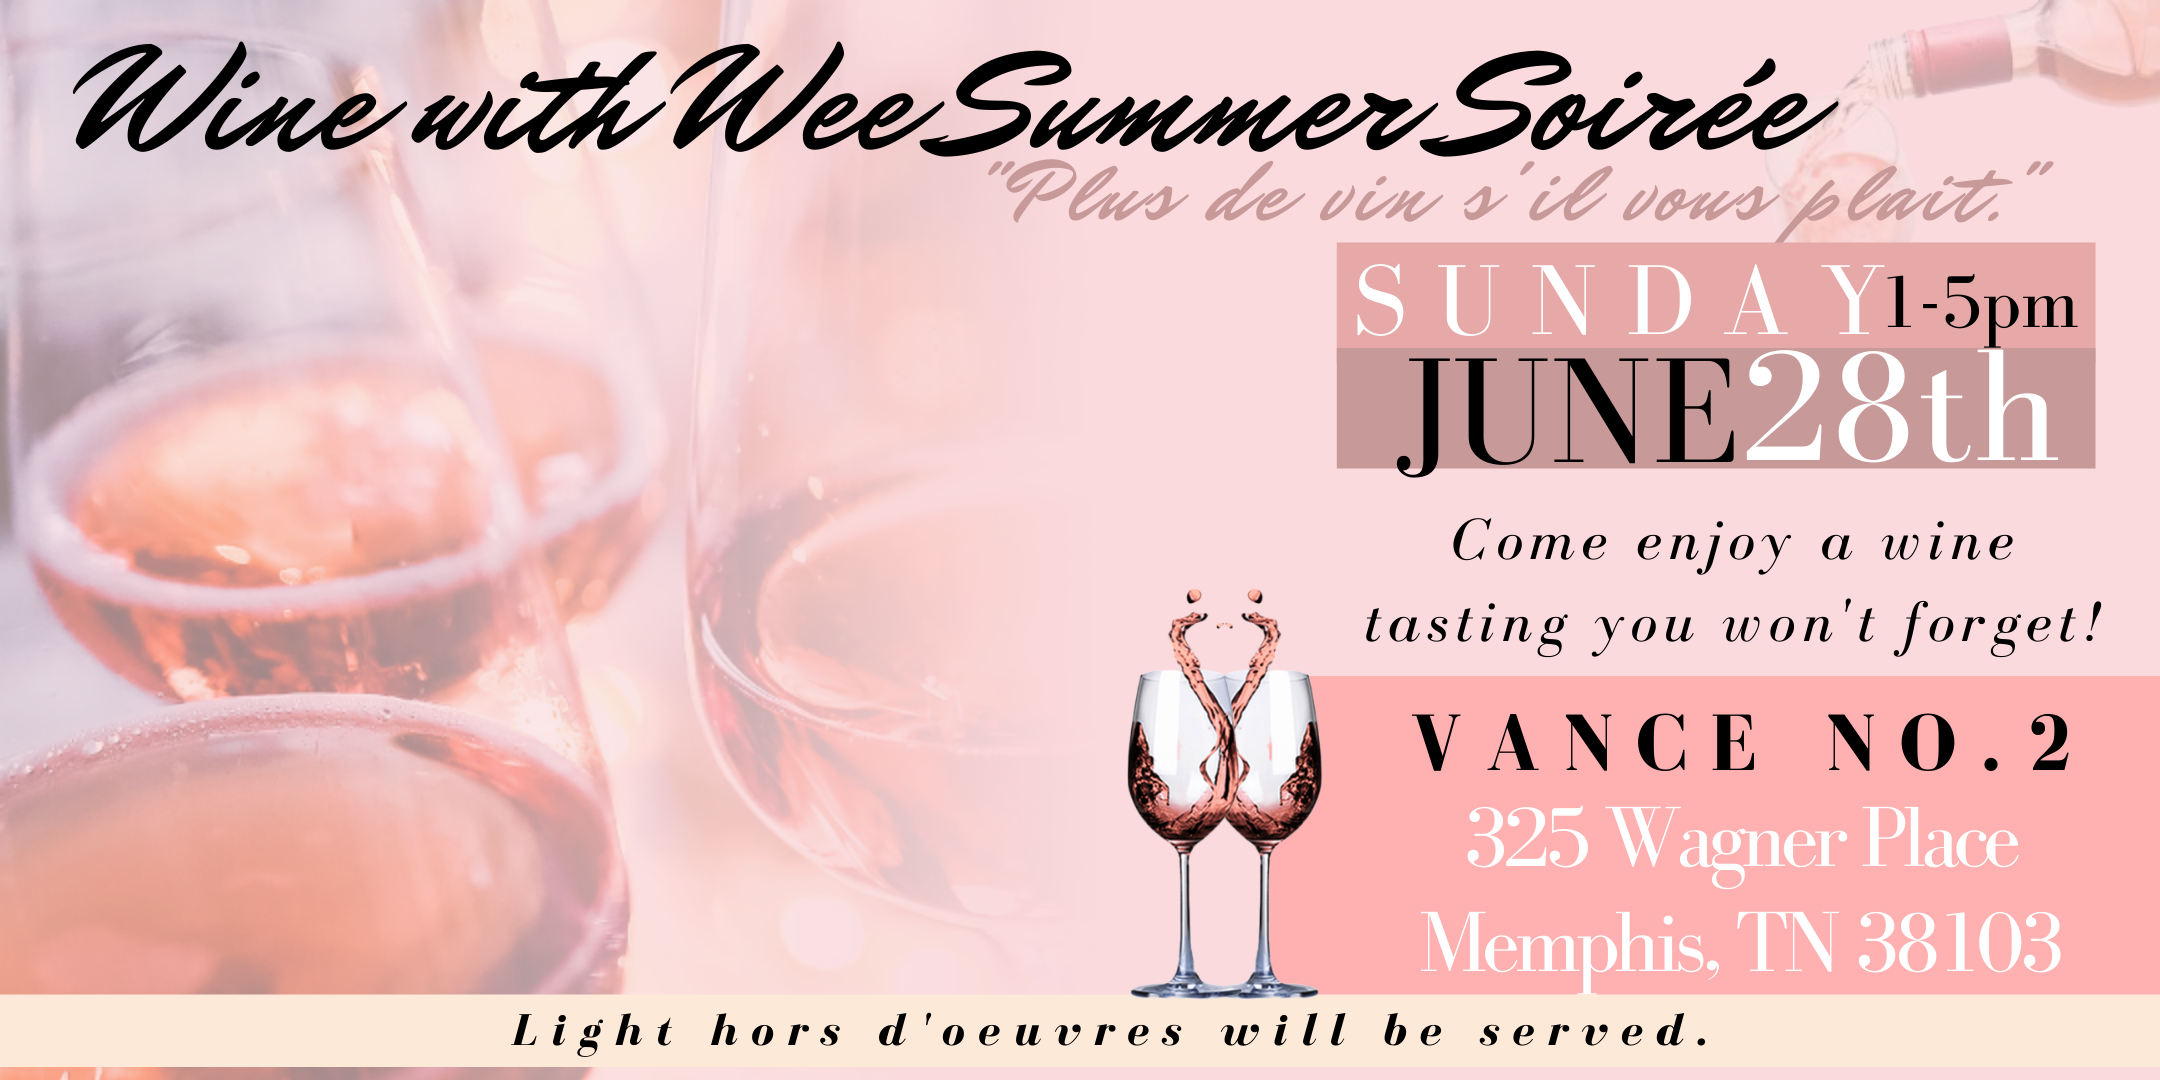 Wine with Wee Summer Soirée